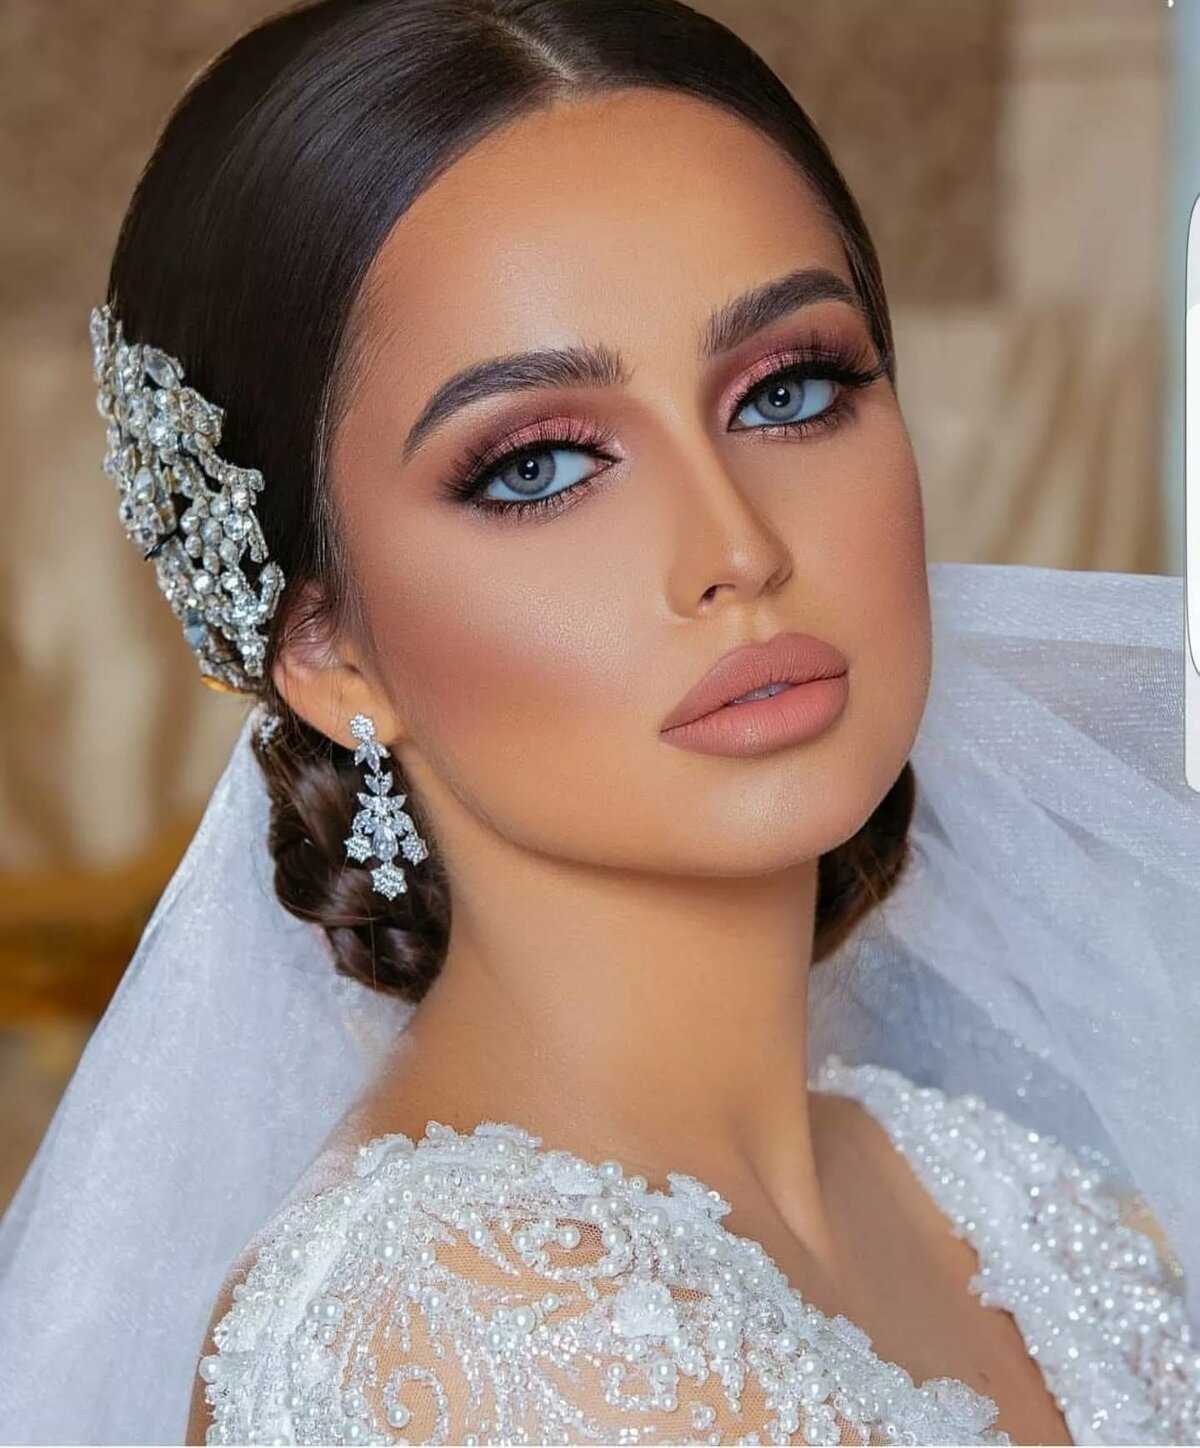 Свадебный макияж. акцент на красный или 5 правил для идеального образа невесты!